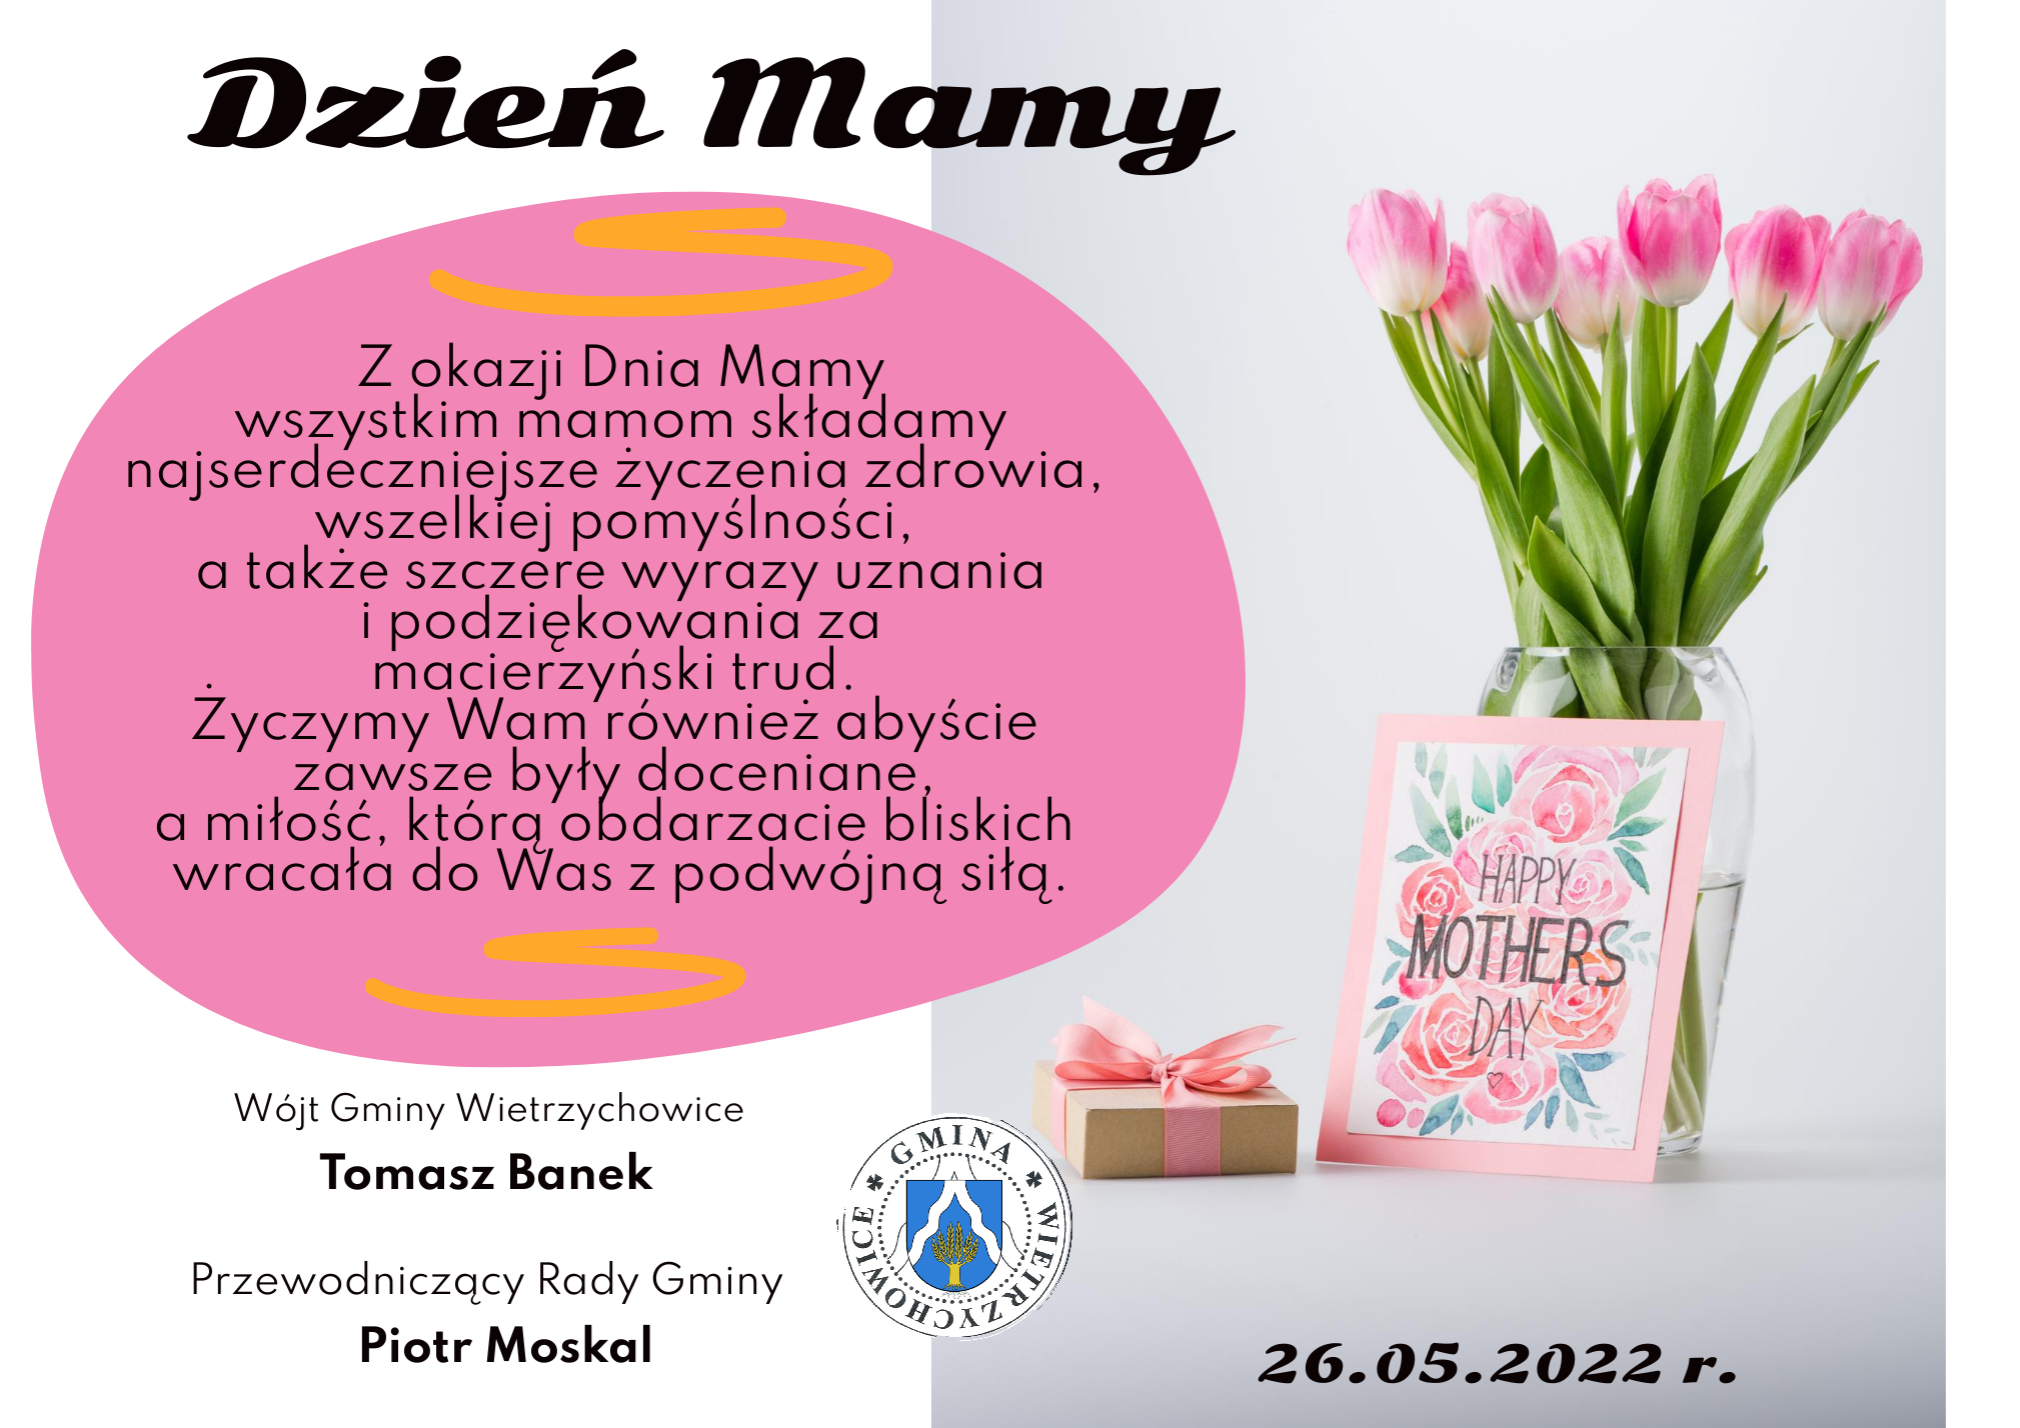 Zdjęcie przedstawia z prawej strony bukiet tulipanów w wazonie. przed wazonem kartka w kwiaty z napisem Happy Mothers Day. Z lewej strony tekst z życzeniami.